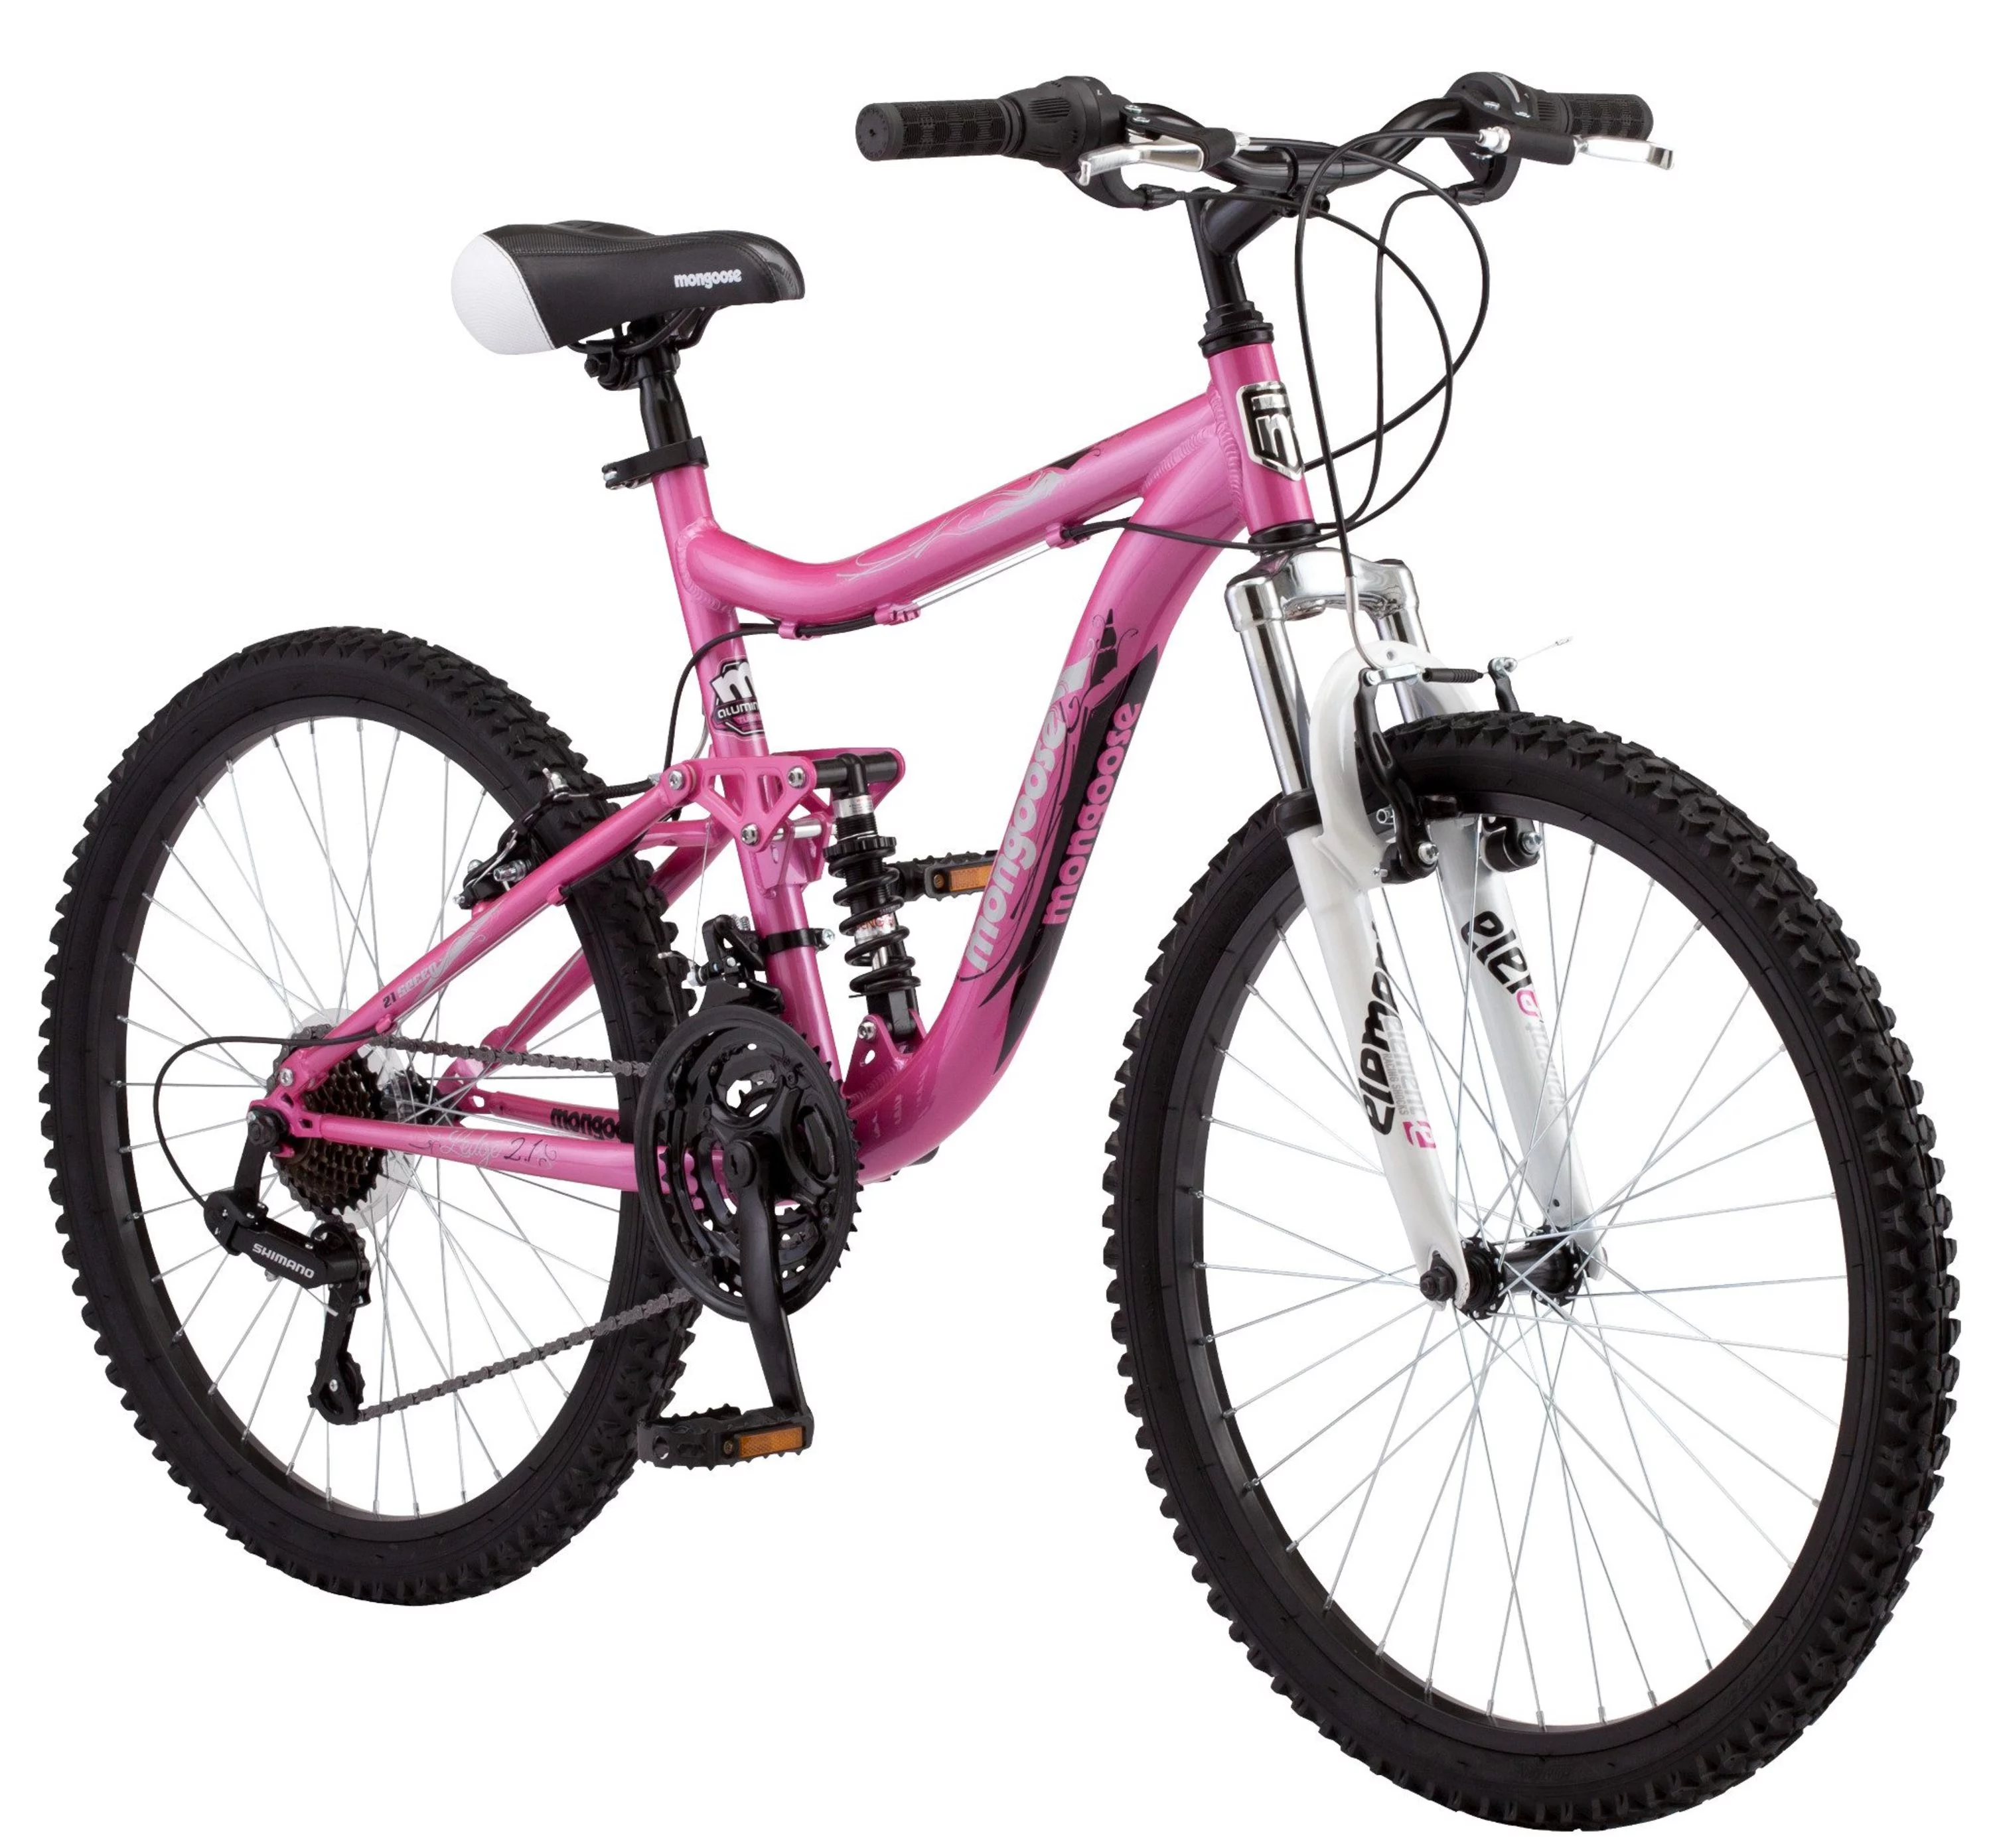 Mongoose 24" Ledge 2.1 Girls Mountain Bike, Light Pink